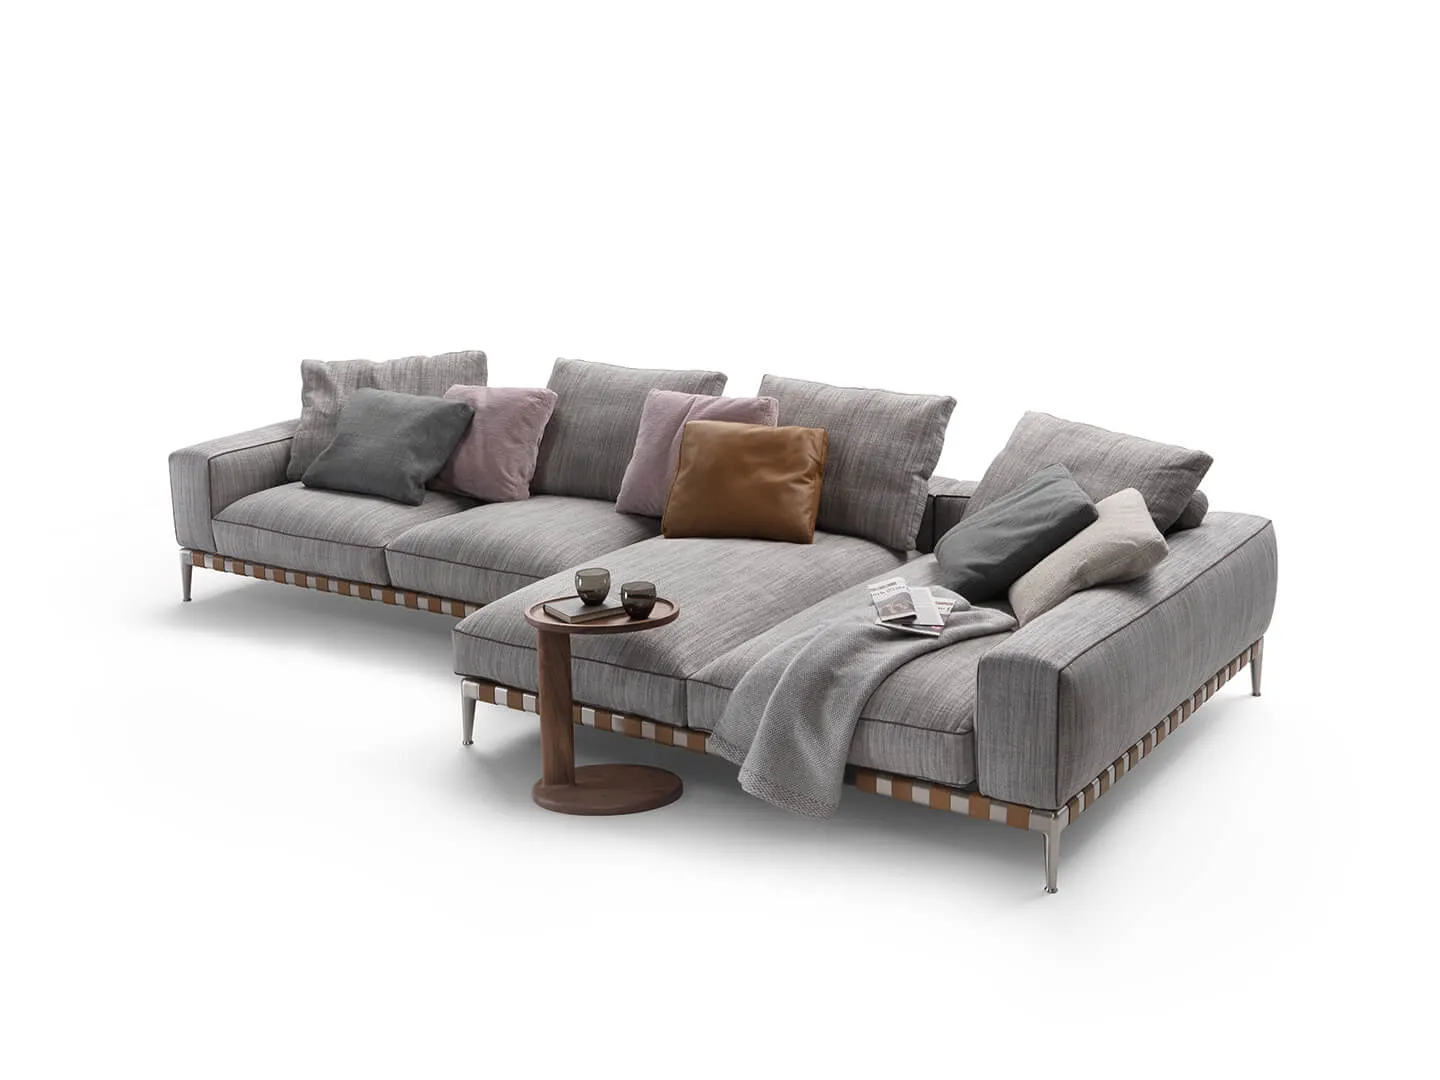 Gregory XL divano componibile, Antonio Citterio design